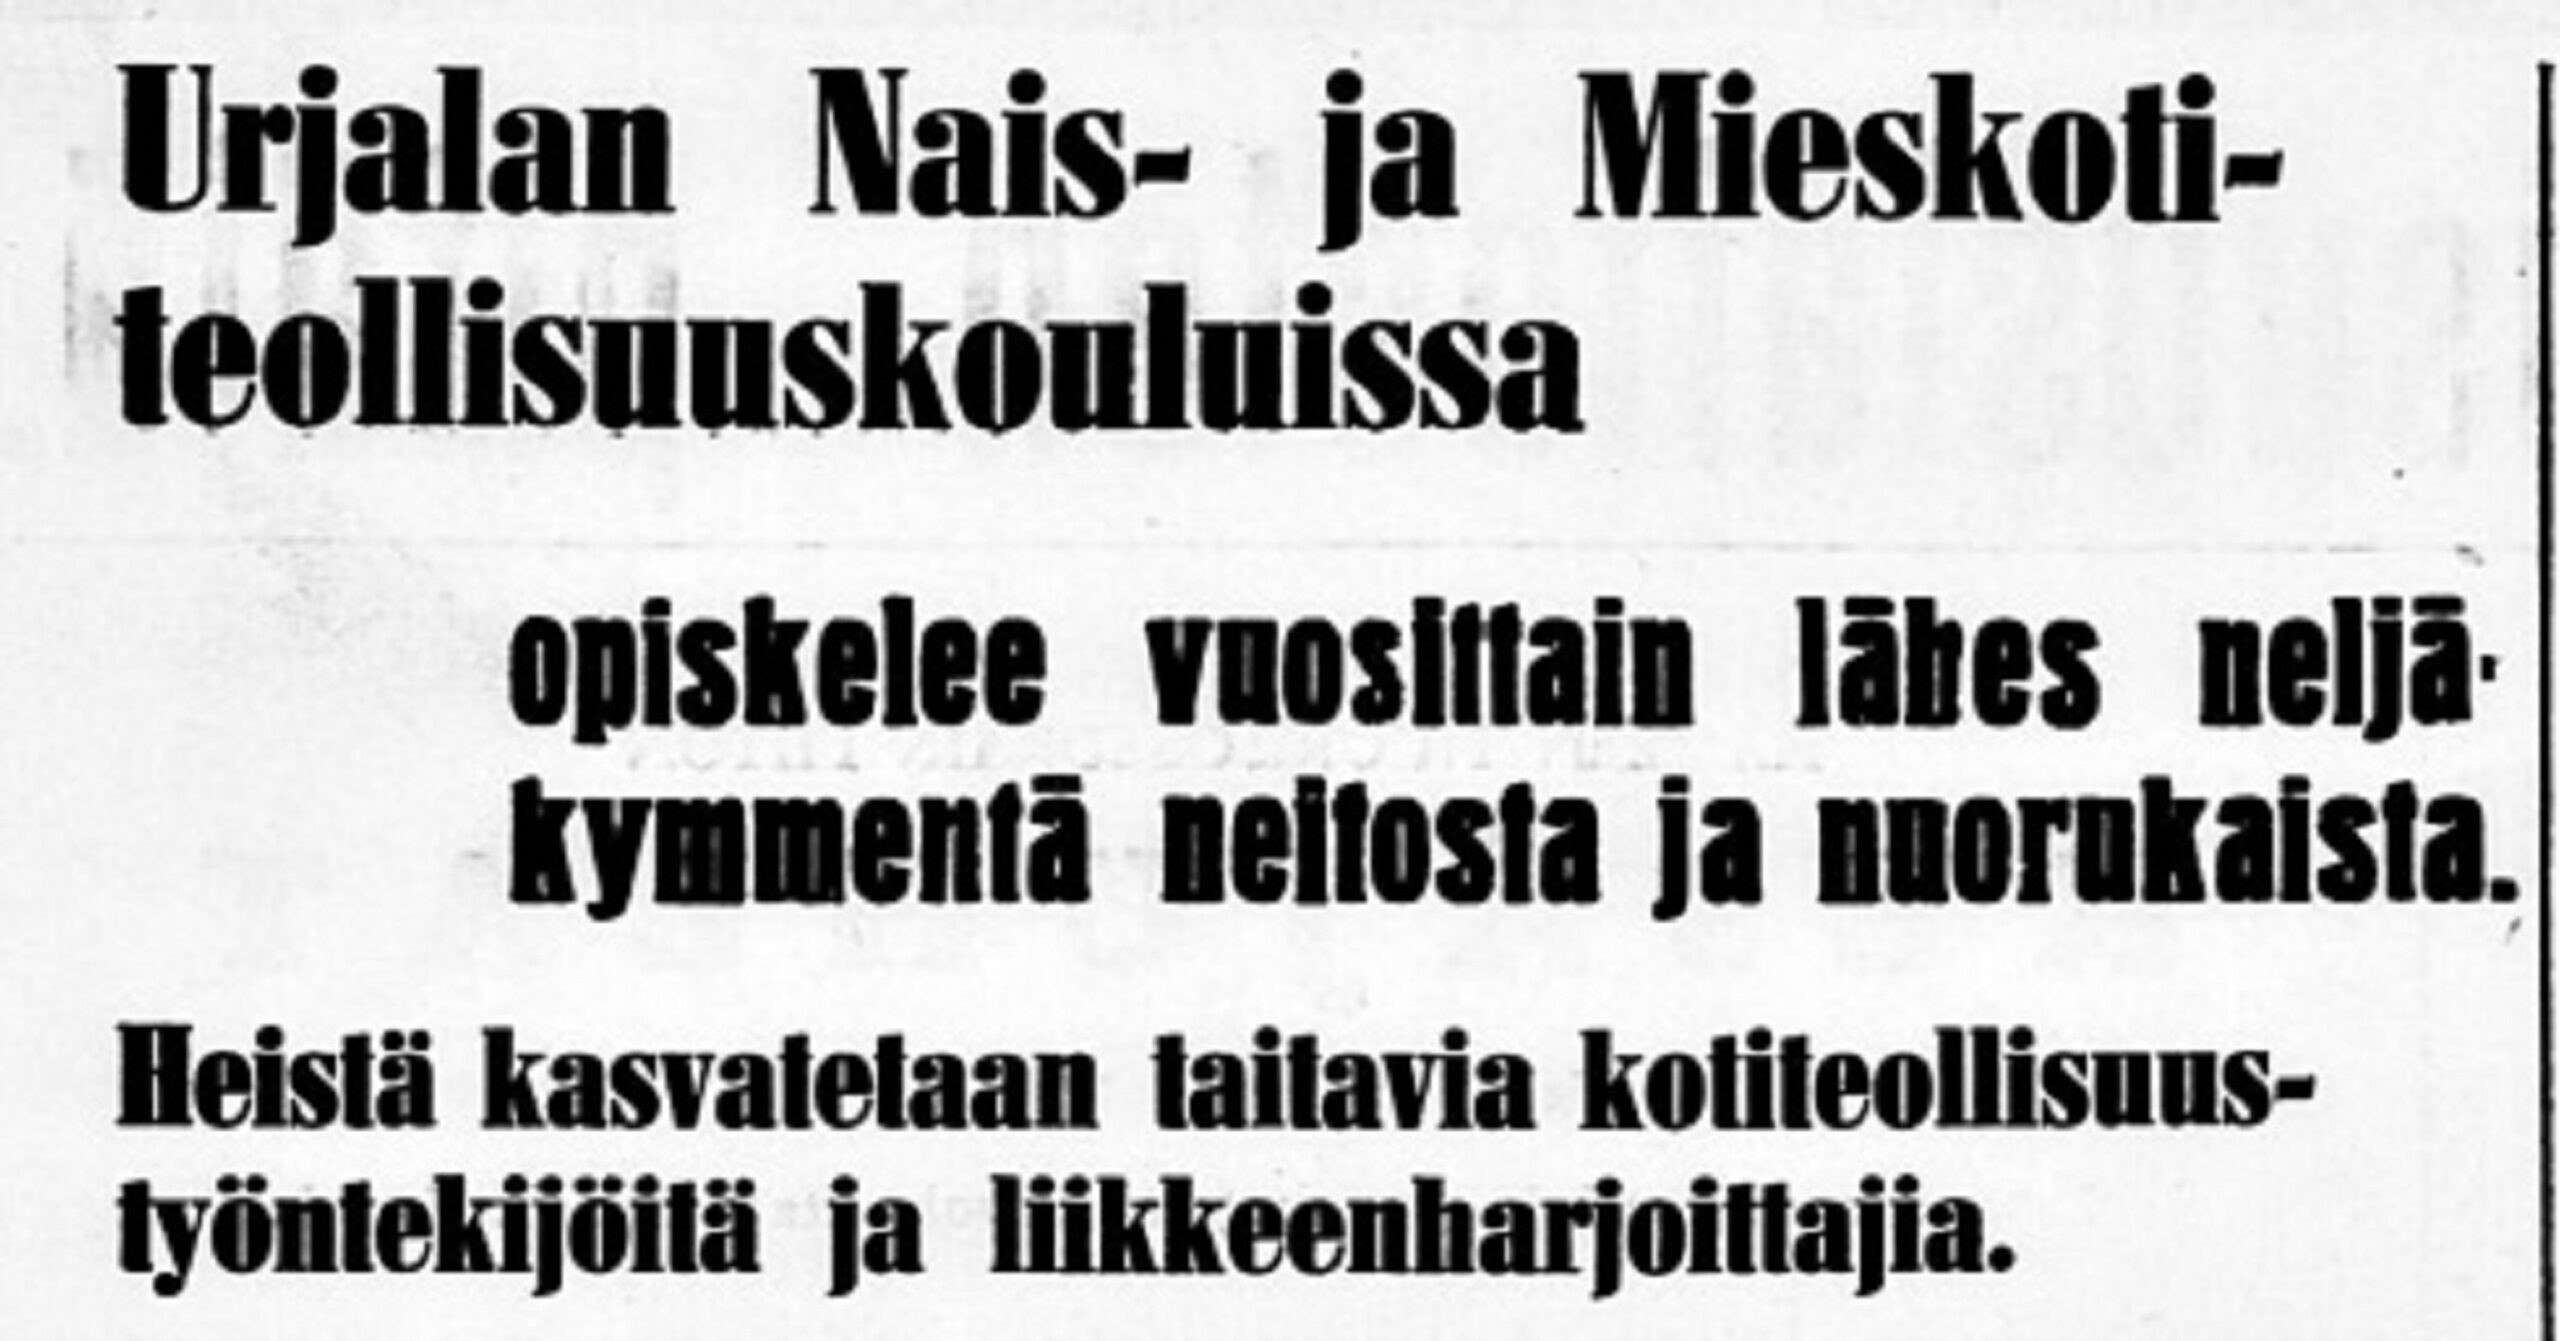 Urjalan naiskotiteollisuuskoulun ensimmäiset vuosikymmenet - Urjalan Sanomat